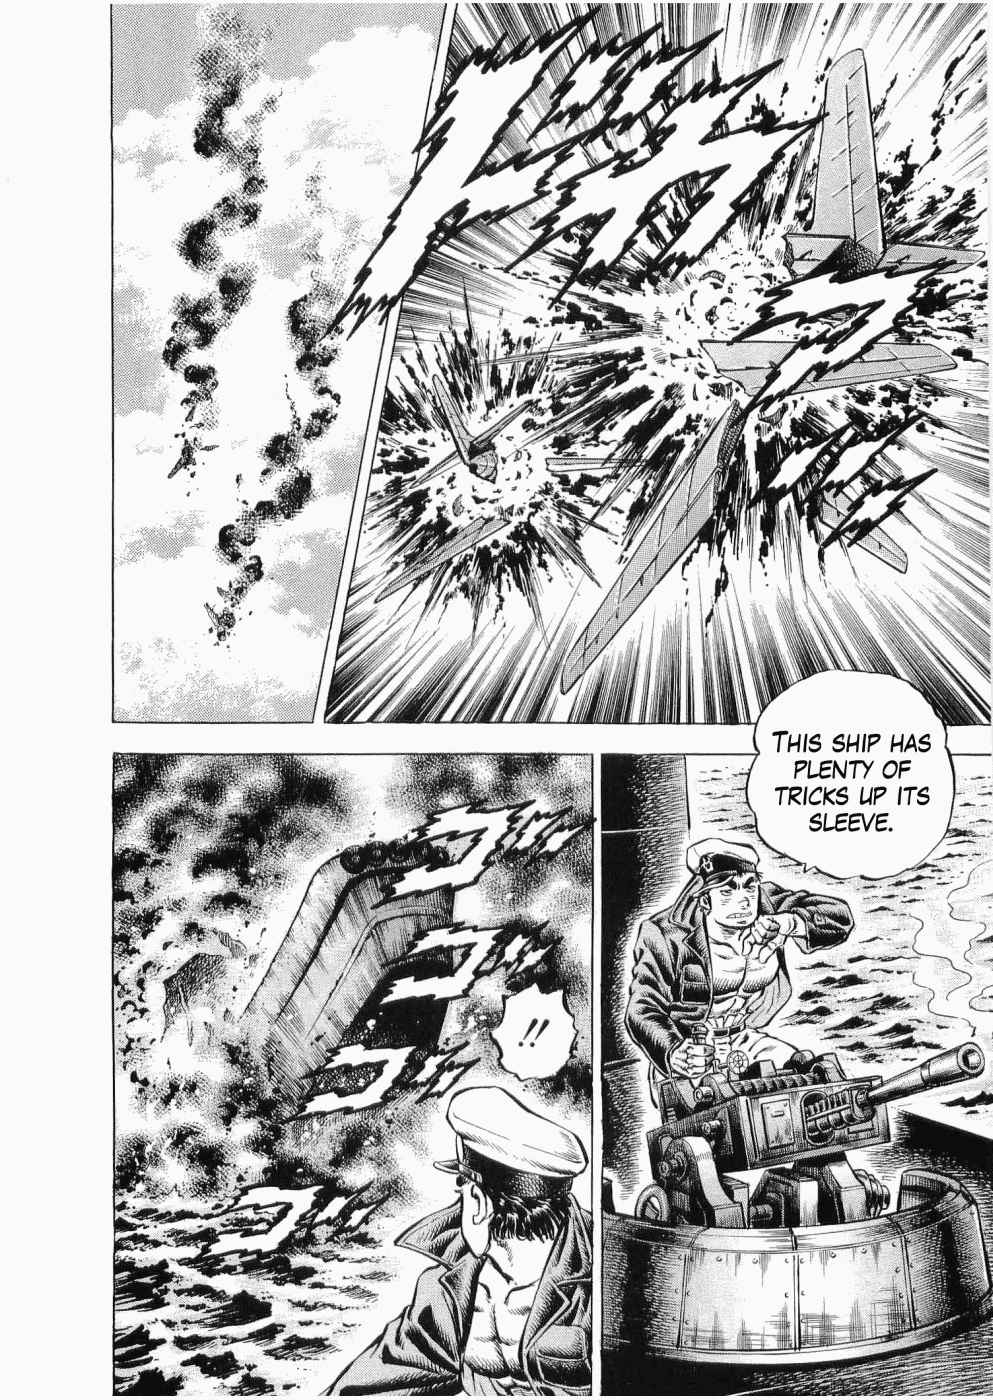 Tenkamusou Edajima Heihachi Den Vol.5 Ch.25